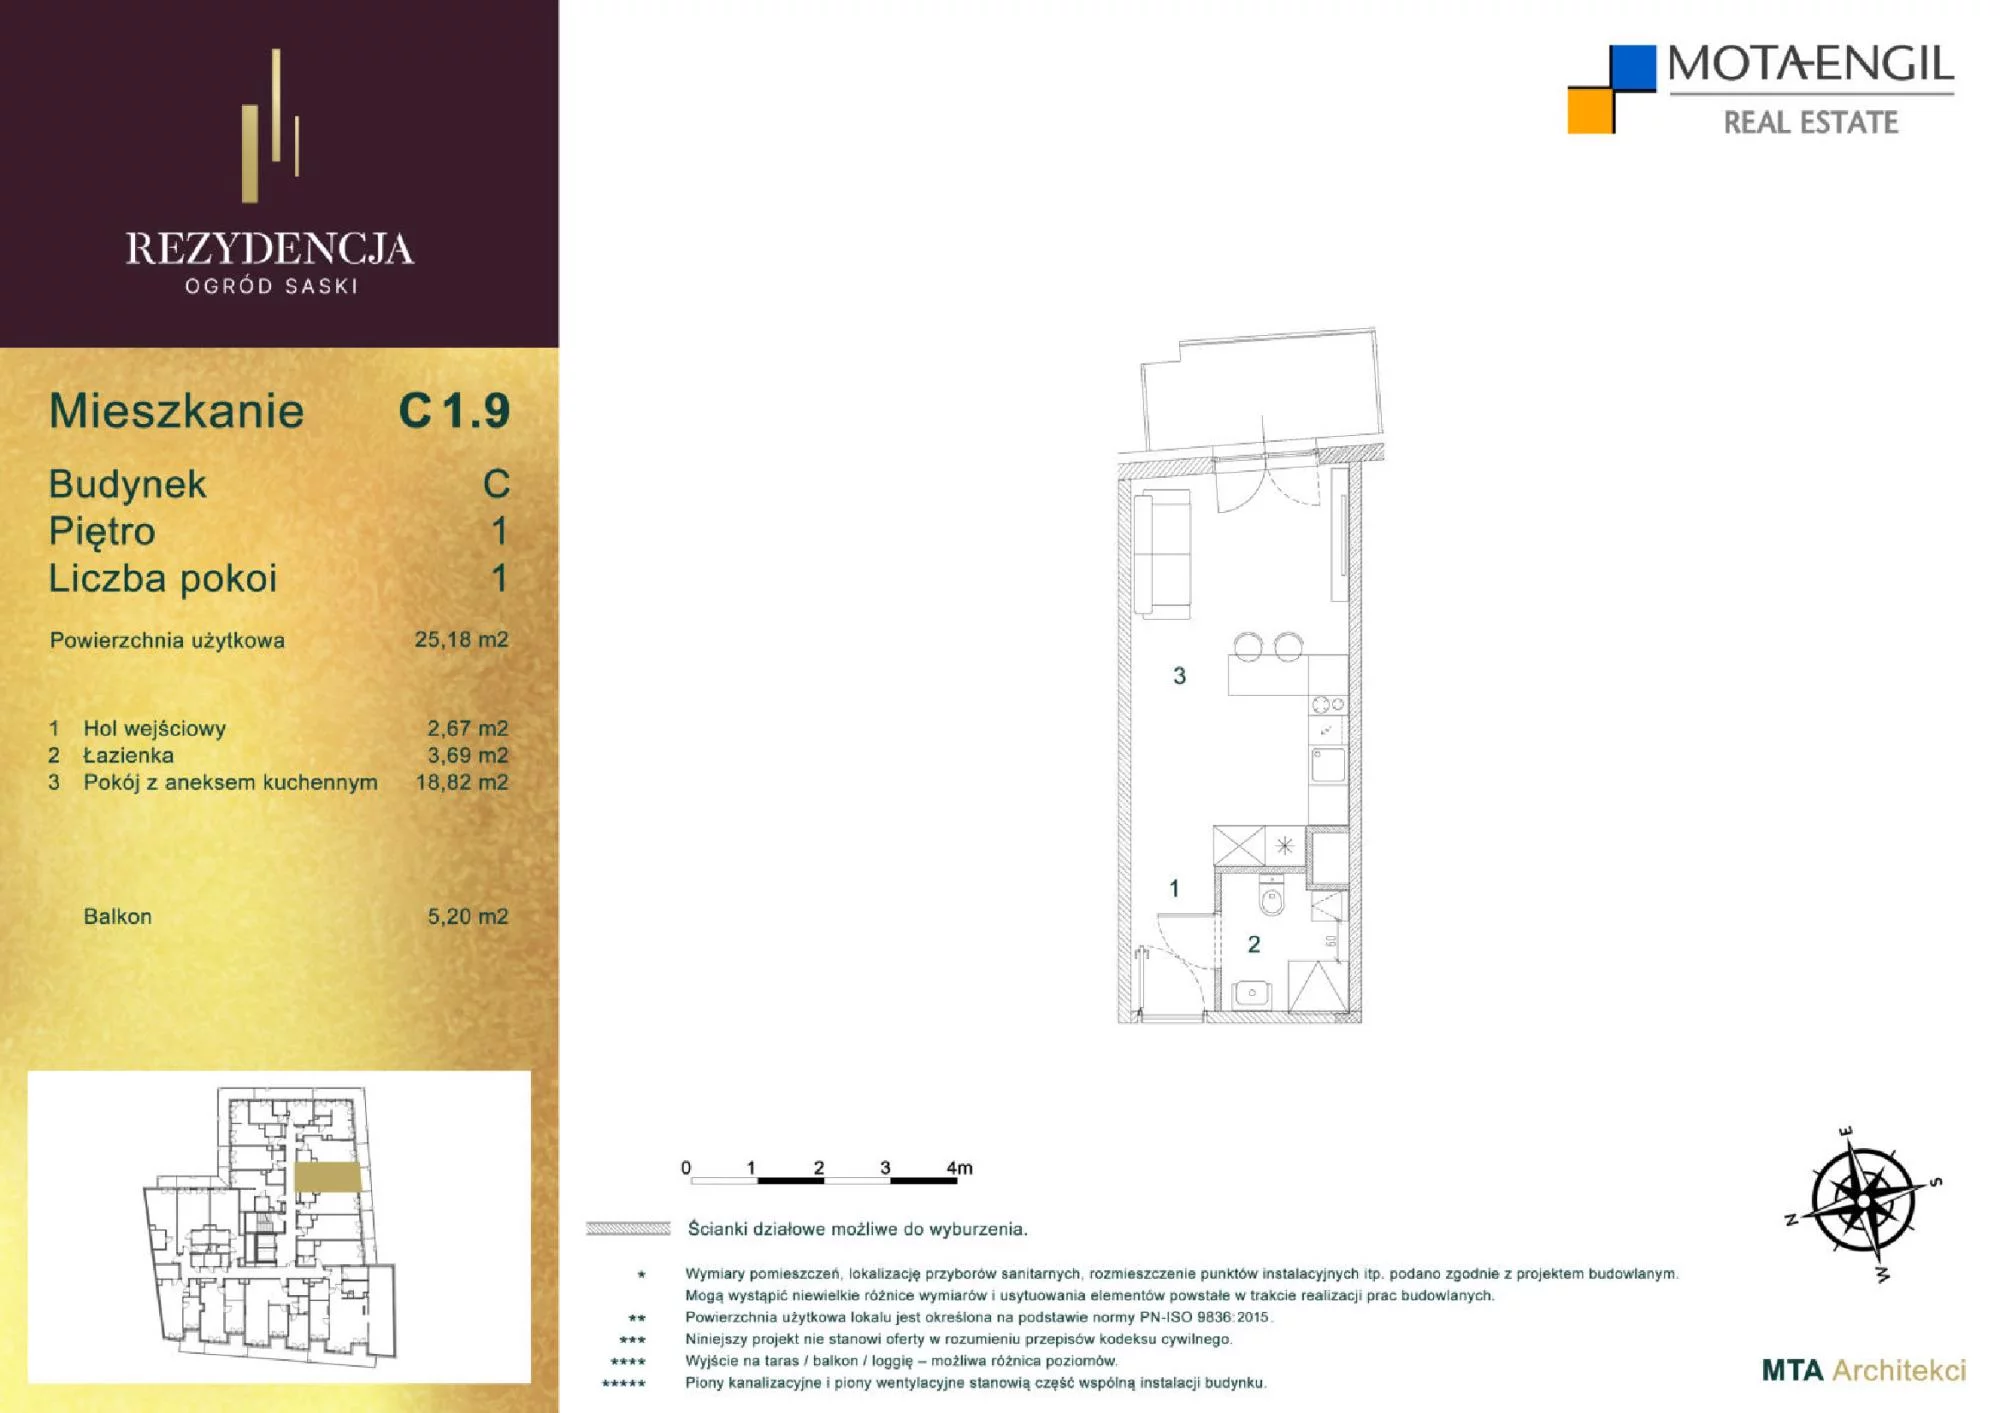 Mieszkanie 25,18 m², piętro 1, oferta nr C1.9, Rezydencja Ogród Saski, Lublin, Wieniawa, ul. Jasna 7, 7A